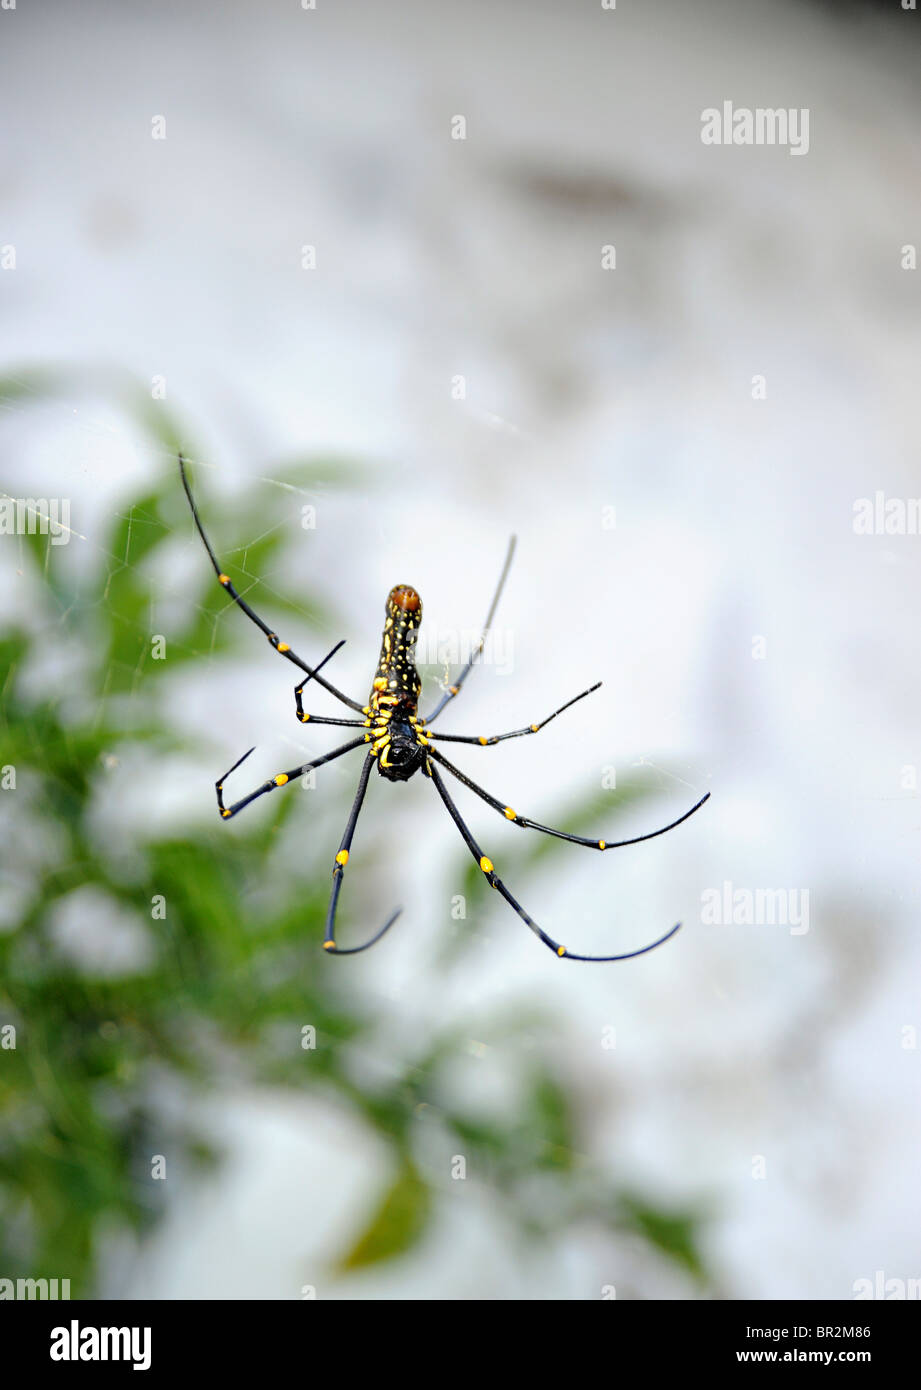 Araignée accrochée dans une toile, Kerala, Inde. Joro Spider, également connu sous le nom d'espèce invasive « Fortune-Teller » dans d'autres parties du monde, y compris aux États-Unis Banque D'Images